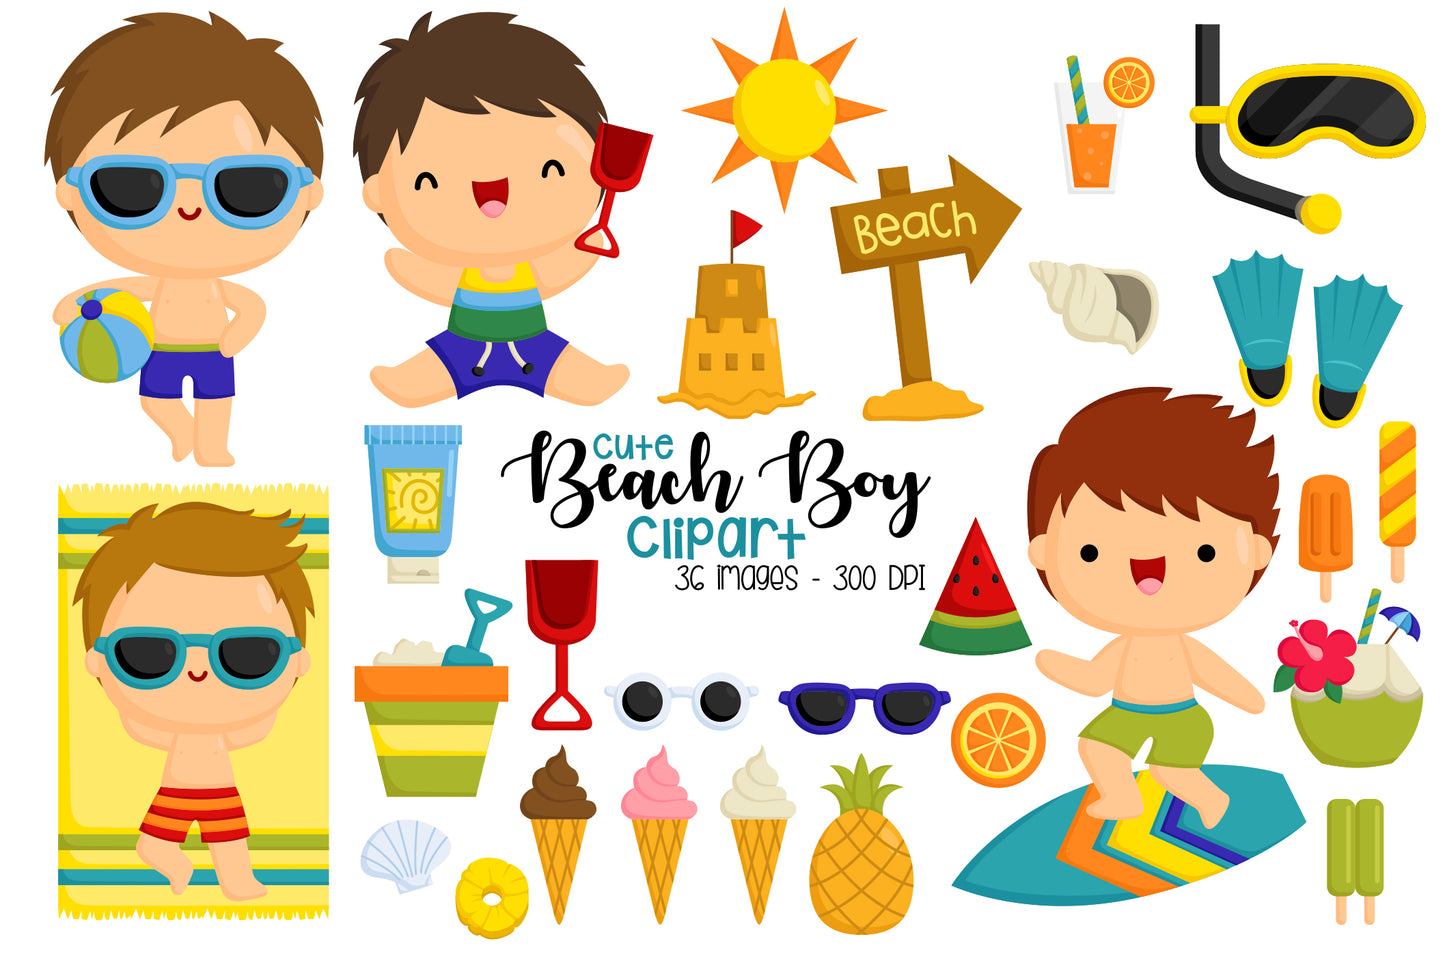 Boy on Beach Clipart - Cute Kids Clip Art